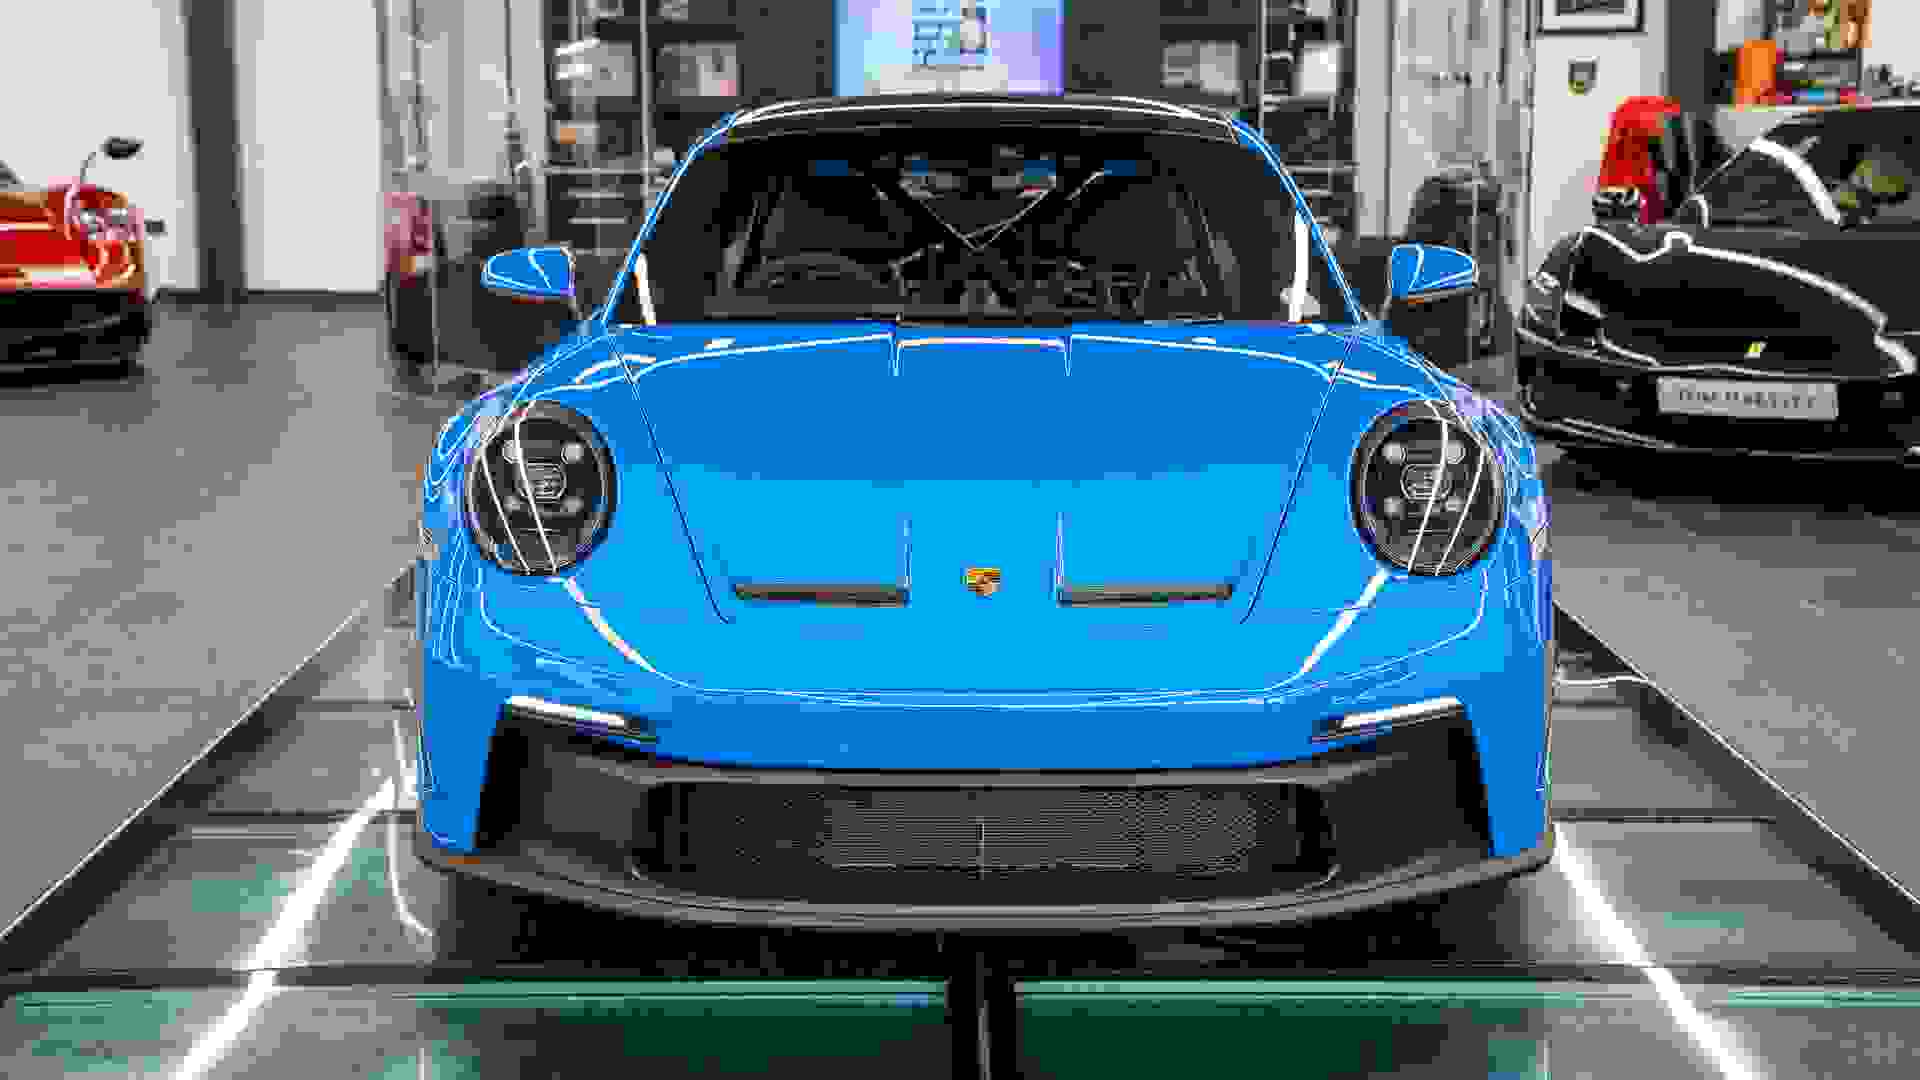 Porsche 911 Photo 0e99275e-657e-4680-b85c-af4fc7b21f6e.jpg